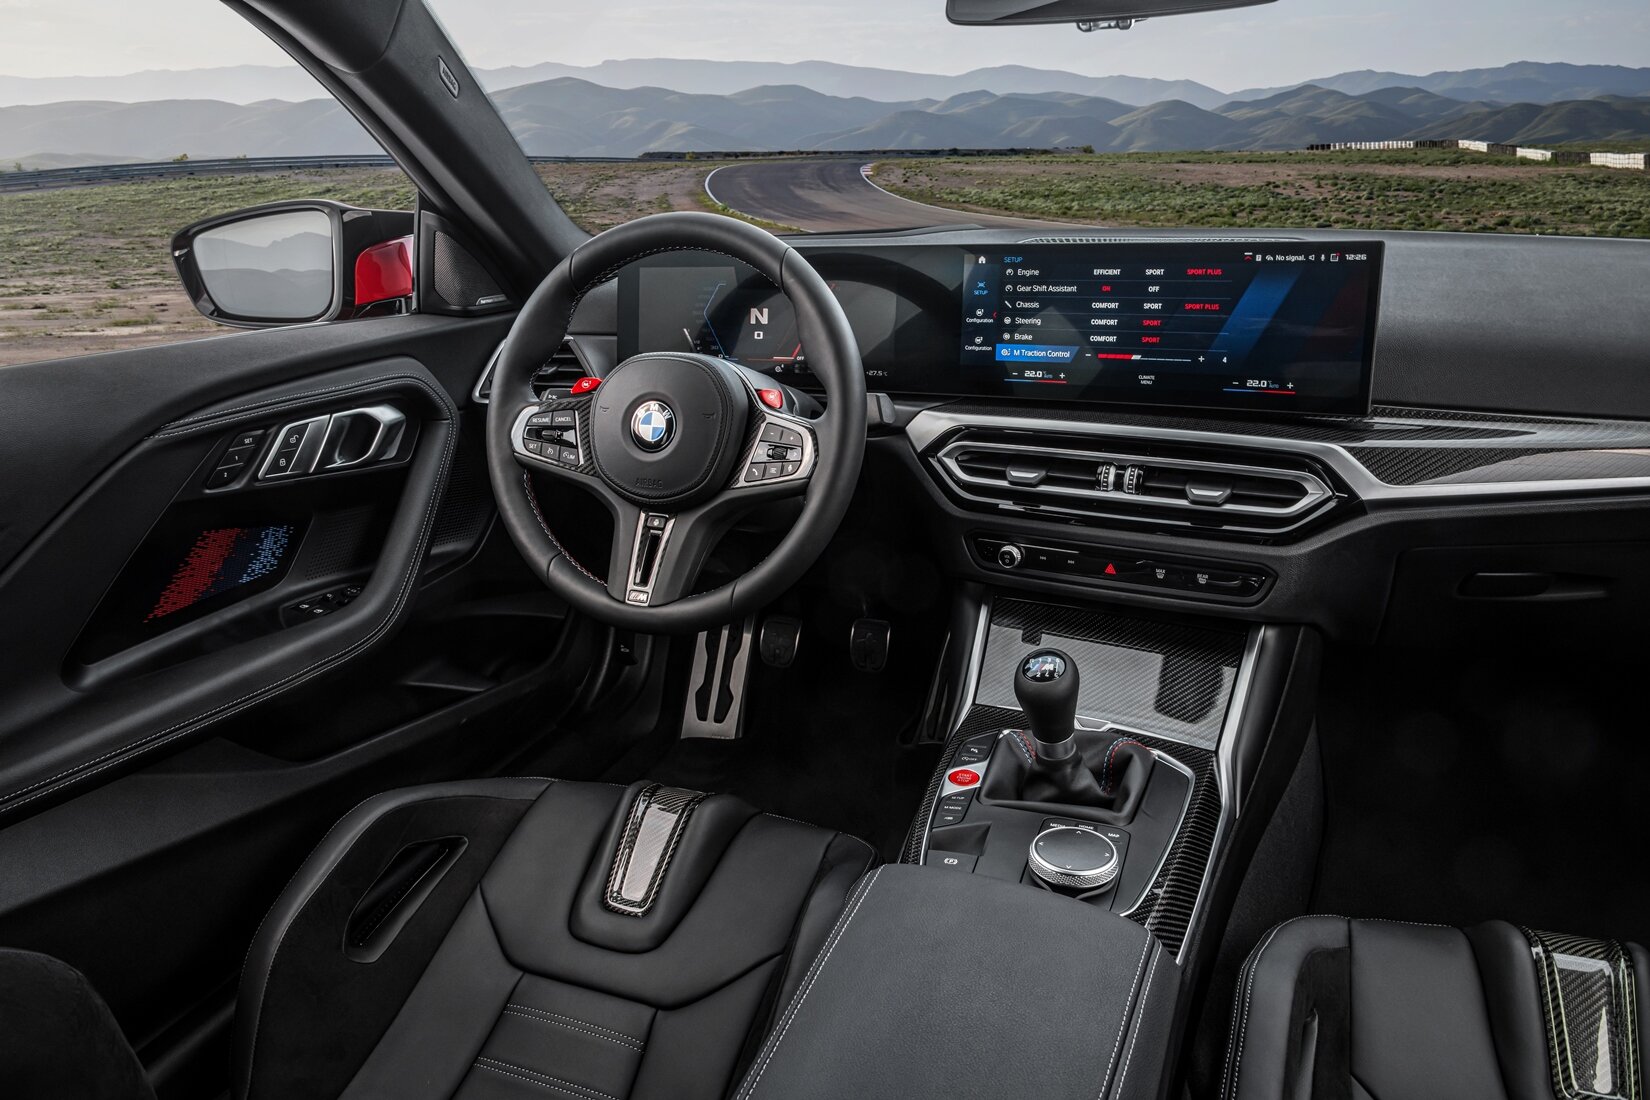 BMW M2 - kompaktní kupé se zadním pohonem, navržené pro ryzí radost z jízdy